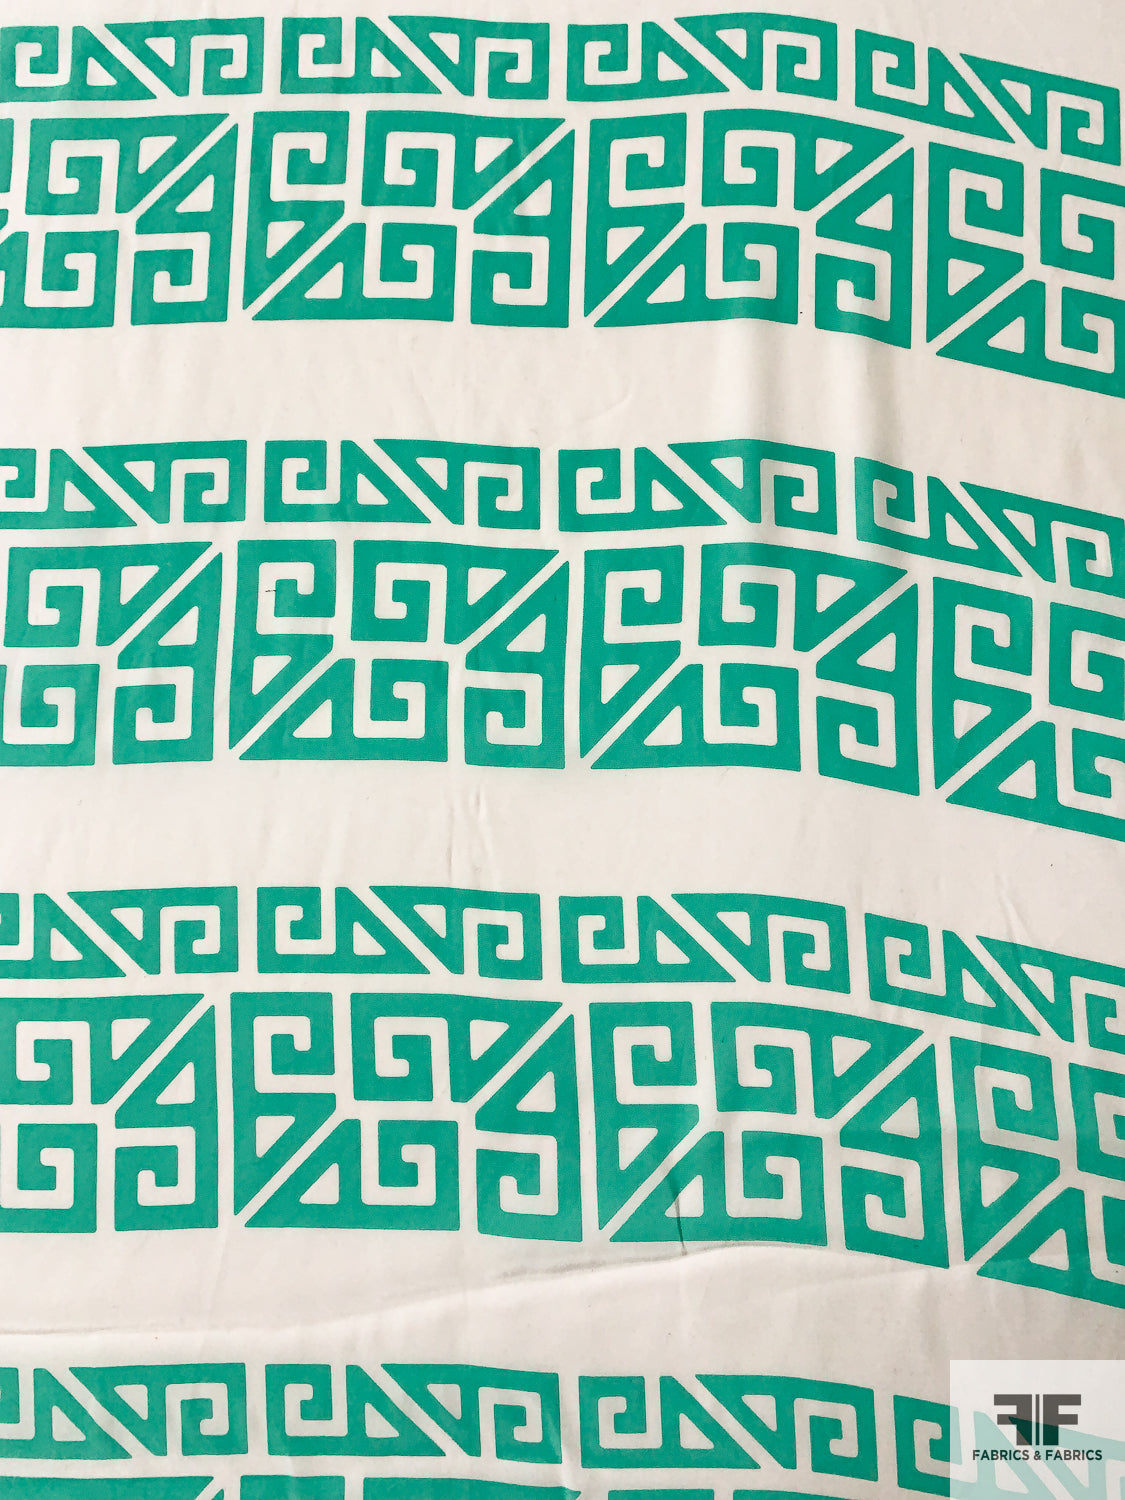 Ethno-Lattice Striped Matte-Side Printed Silk Charmeuse - Seafoam Green / Off-White